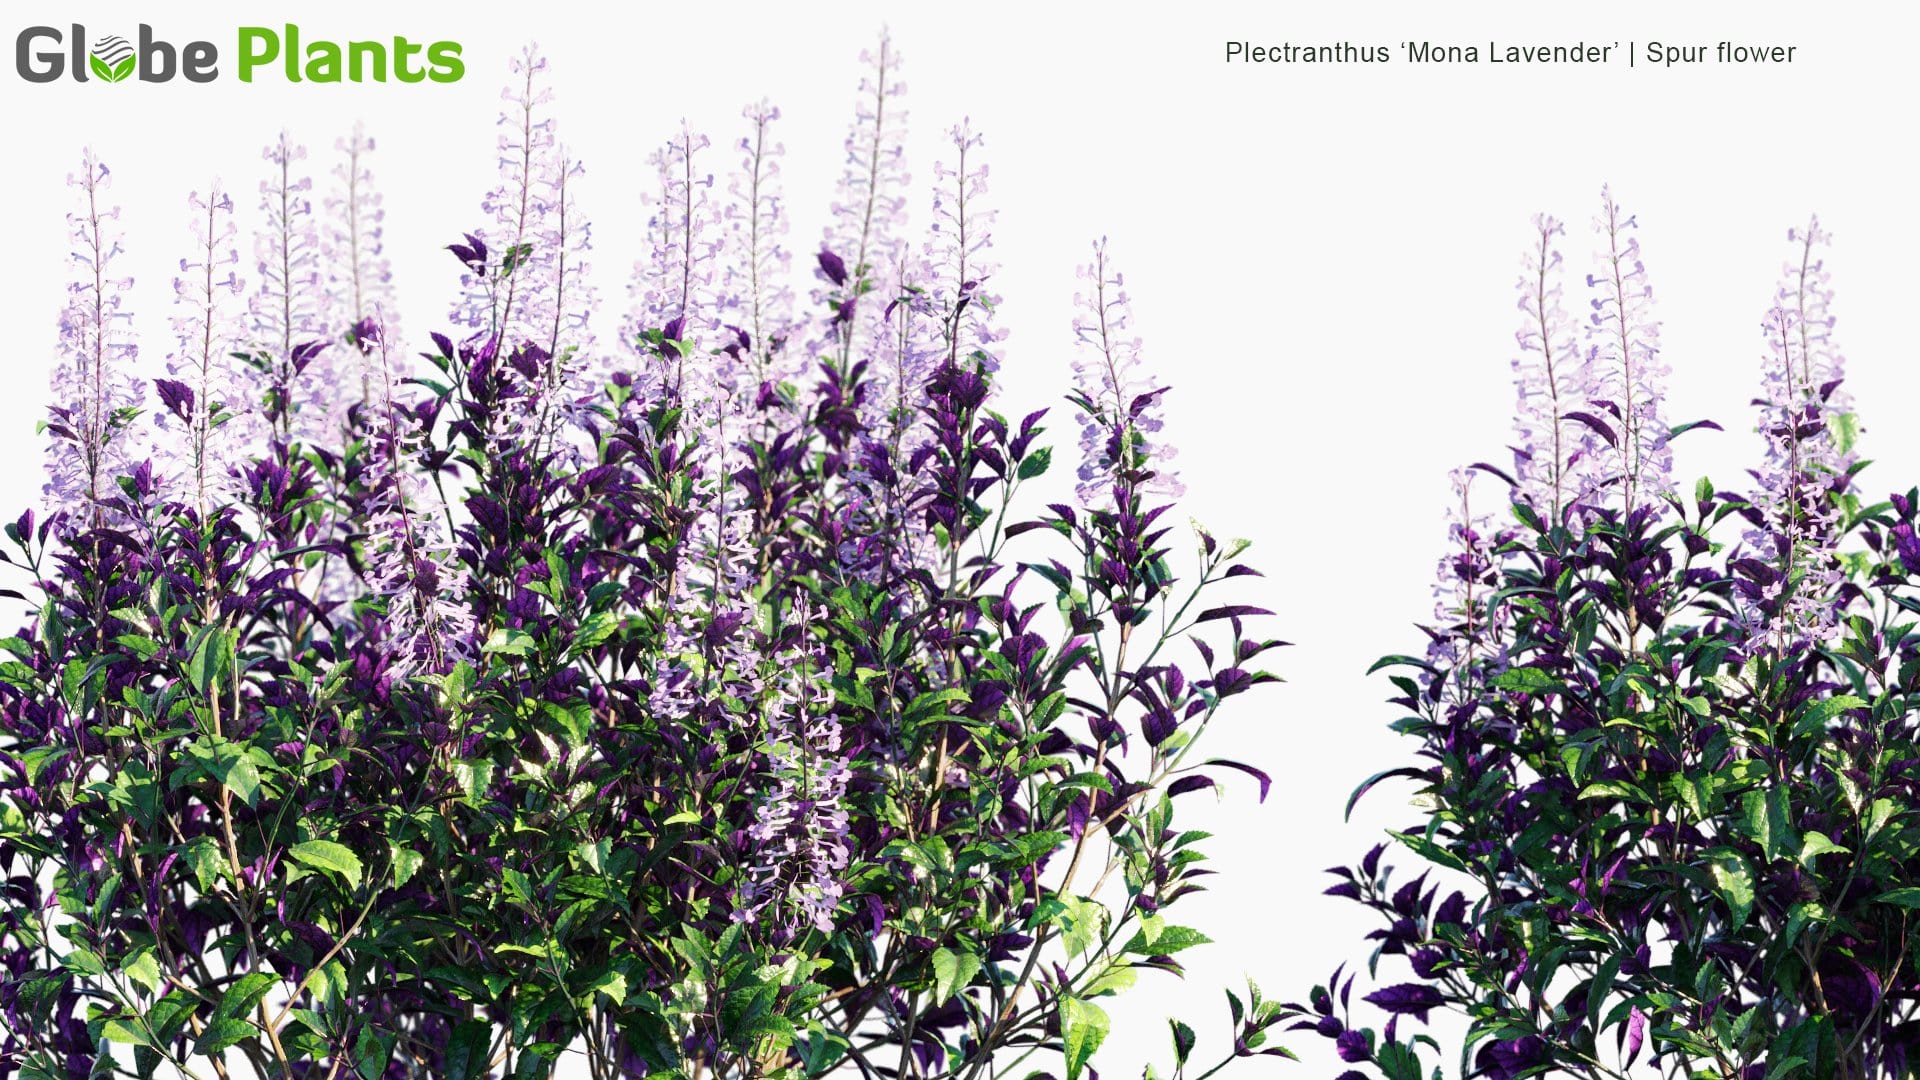 Plectranthus 'Mona Lavender' - Spur Flower (3D Model)